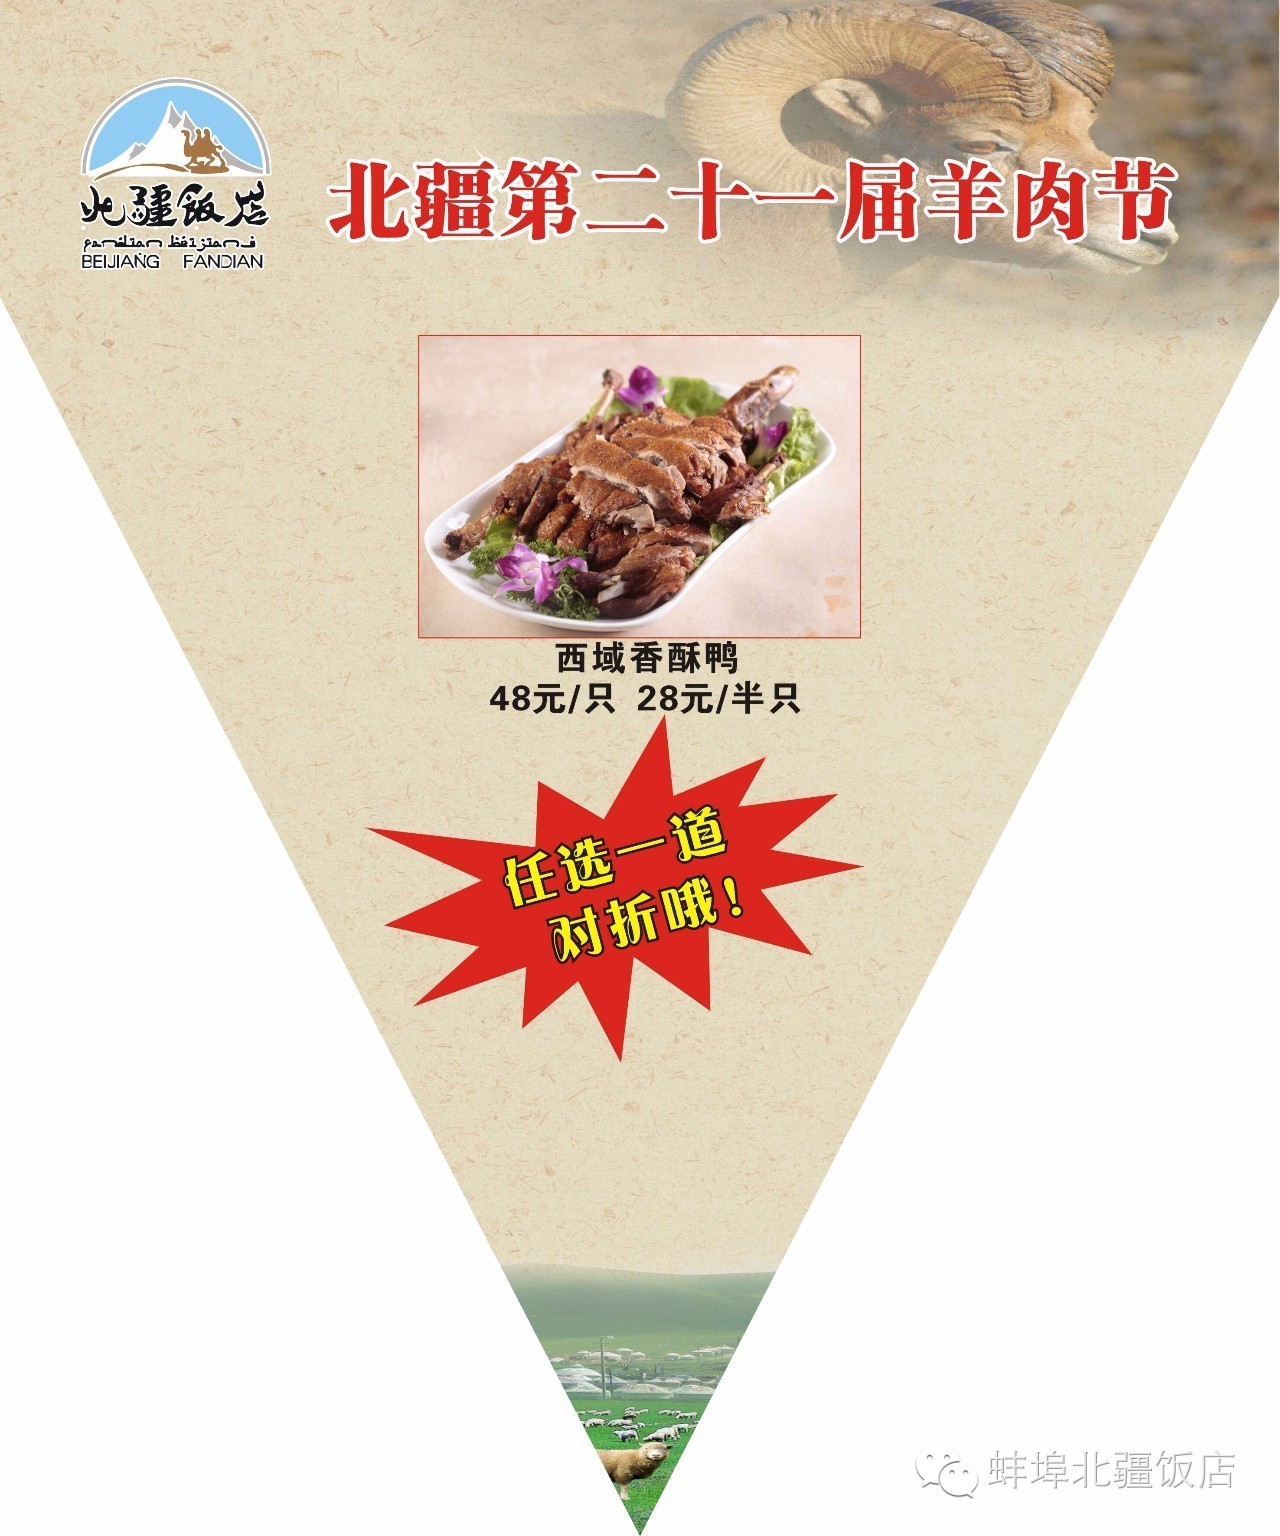 蚌埠北疆饭店丨给你半价，你们还等双十一？！